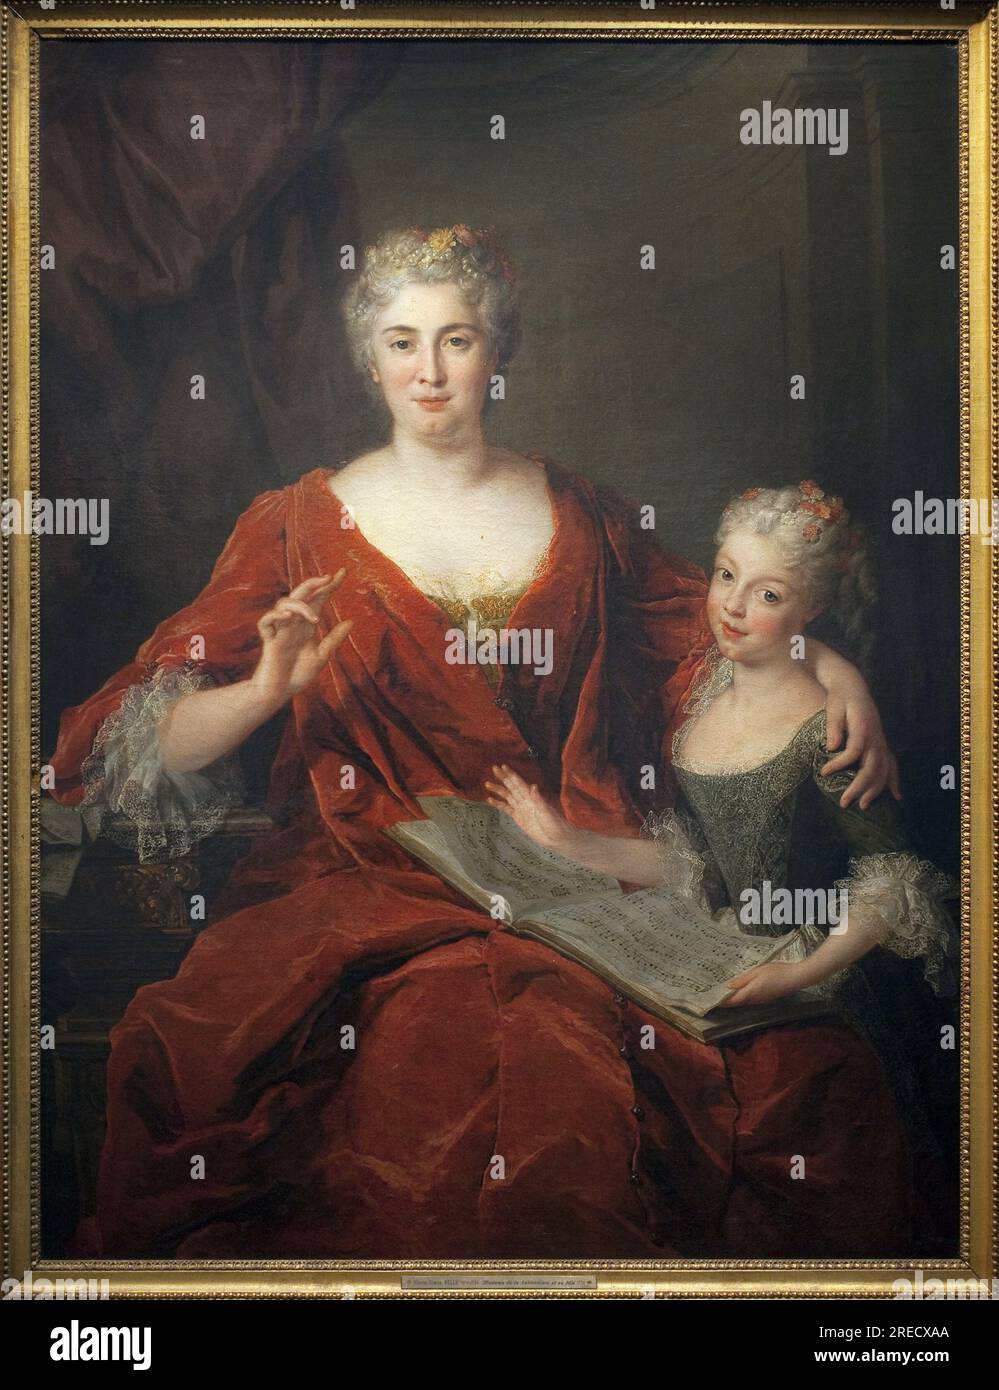 Madame de la Sablonniere et sa fille. Peinture de Alexis Simon Belle (1674-1734), huile sur toile, 1724, art francais 18e siecle. Musee des Beaux Arts de Pau. Stock Photo